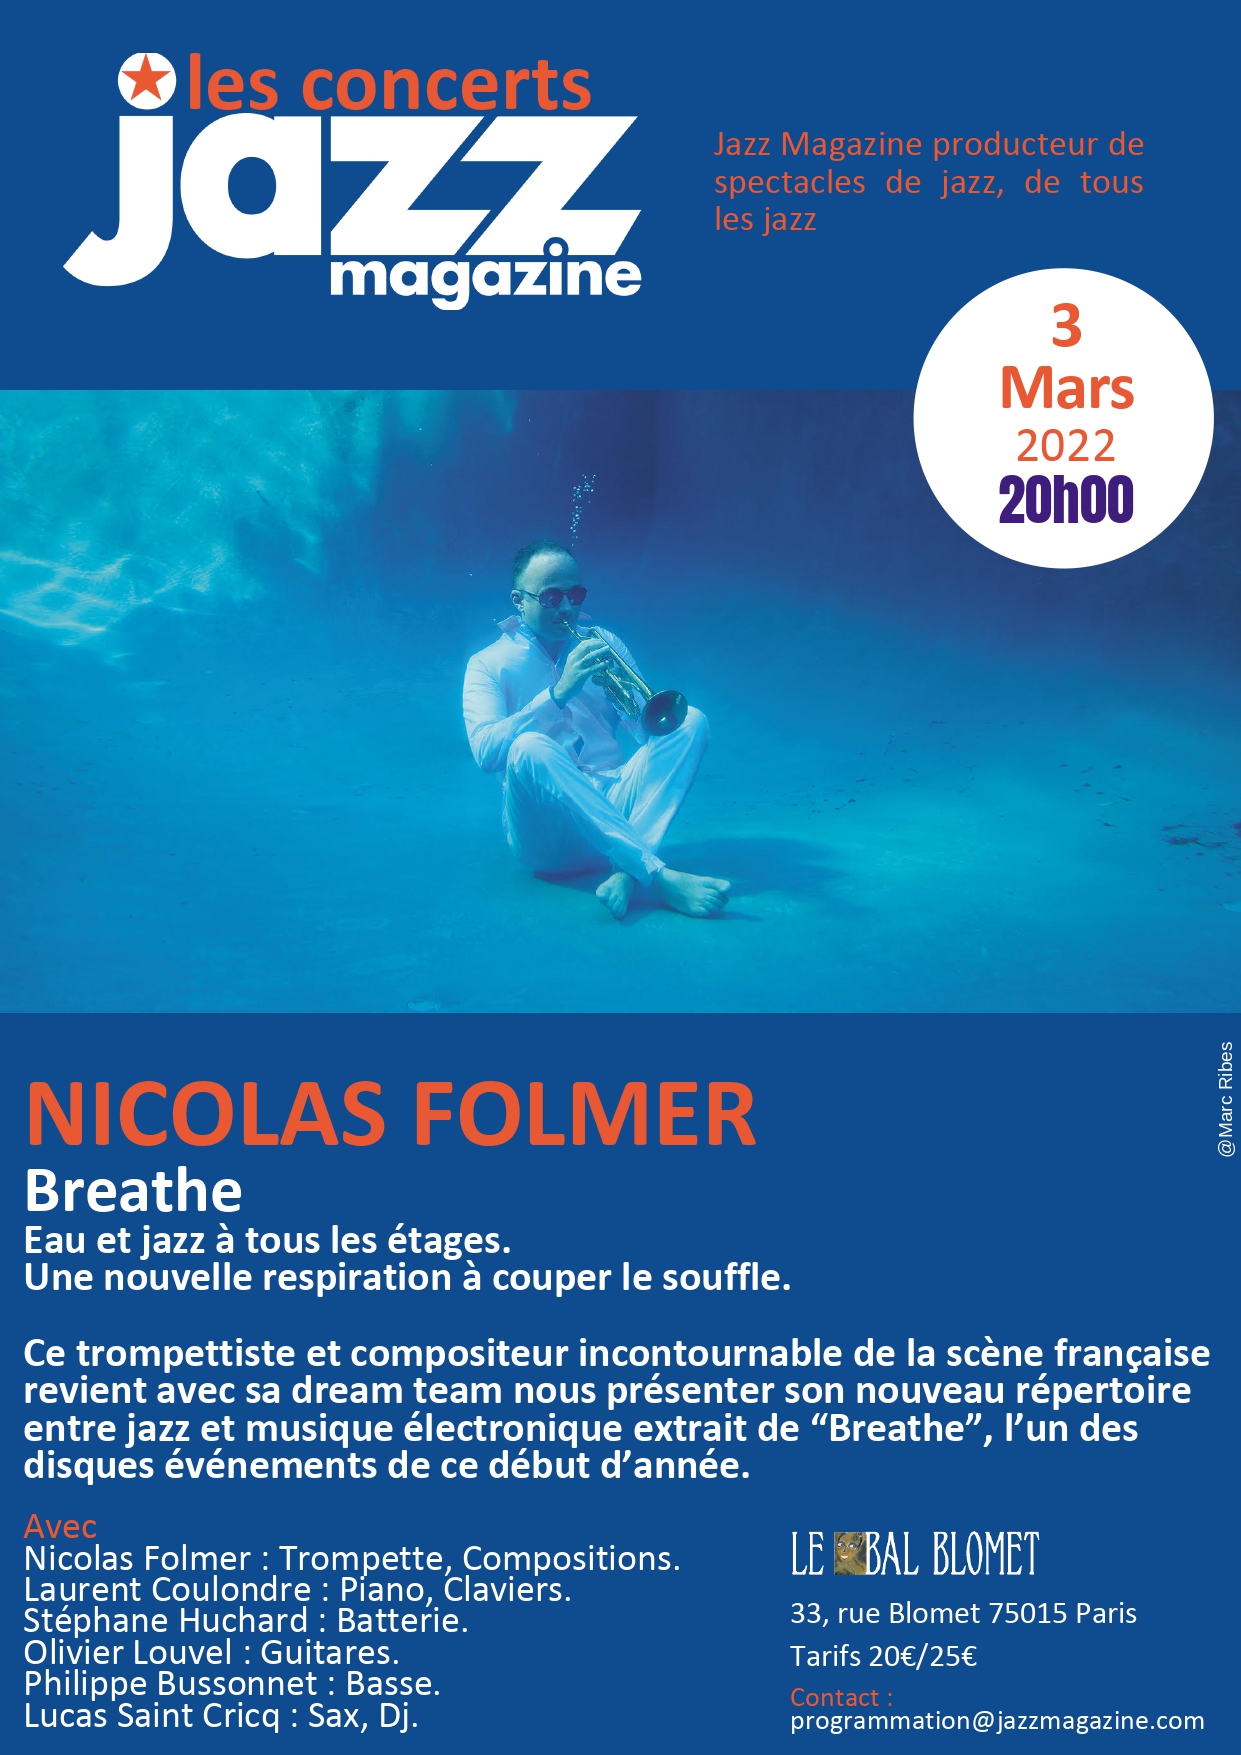 Bam blomet Paris Nicolas Folmer Jazz